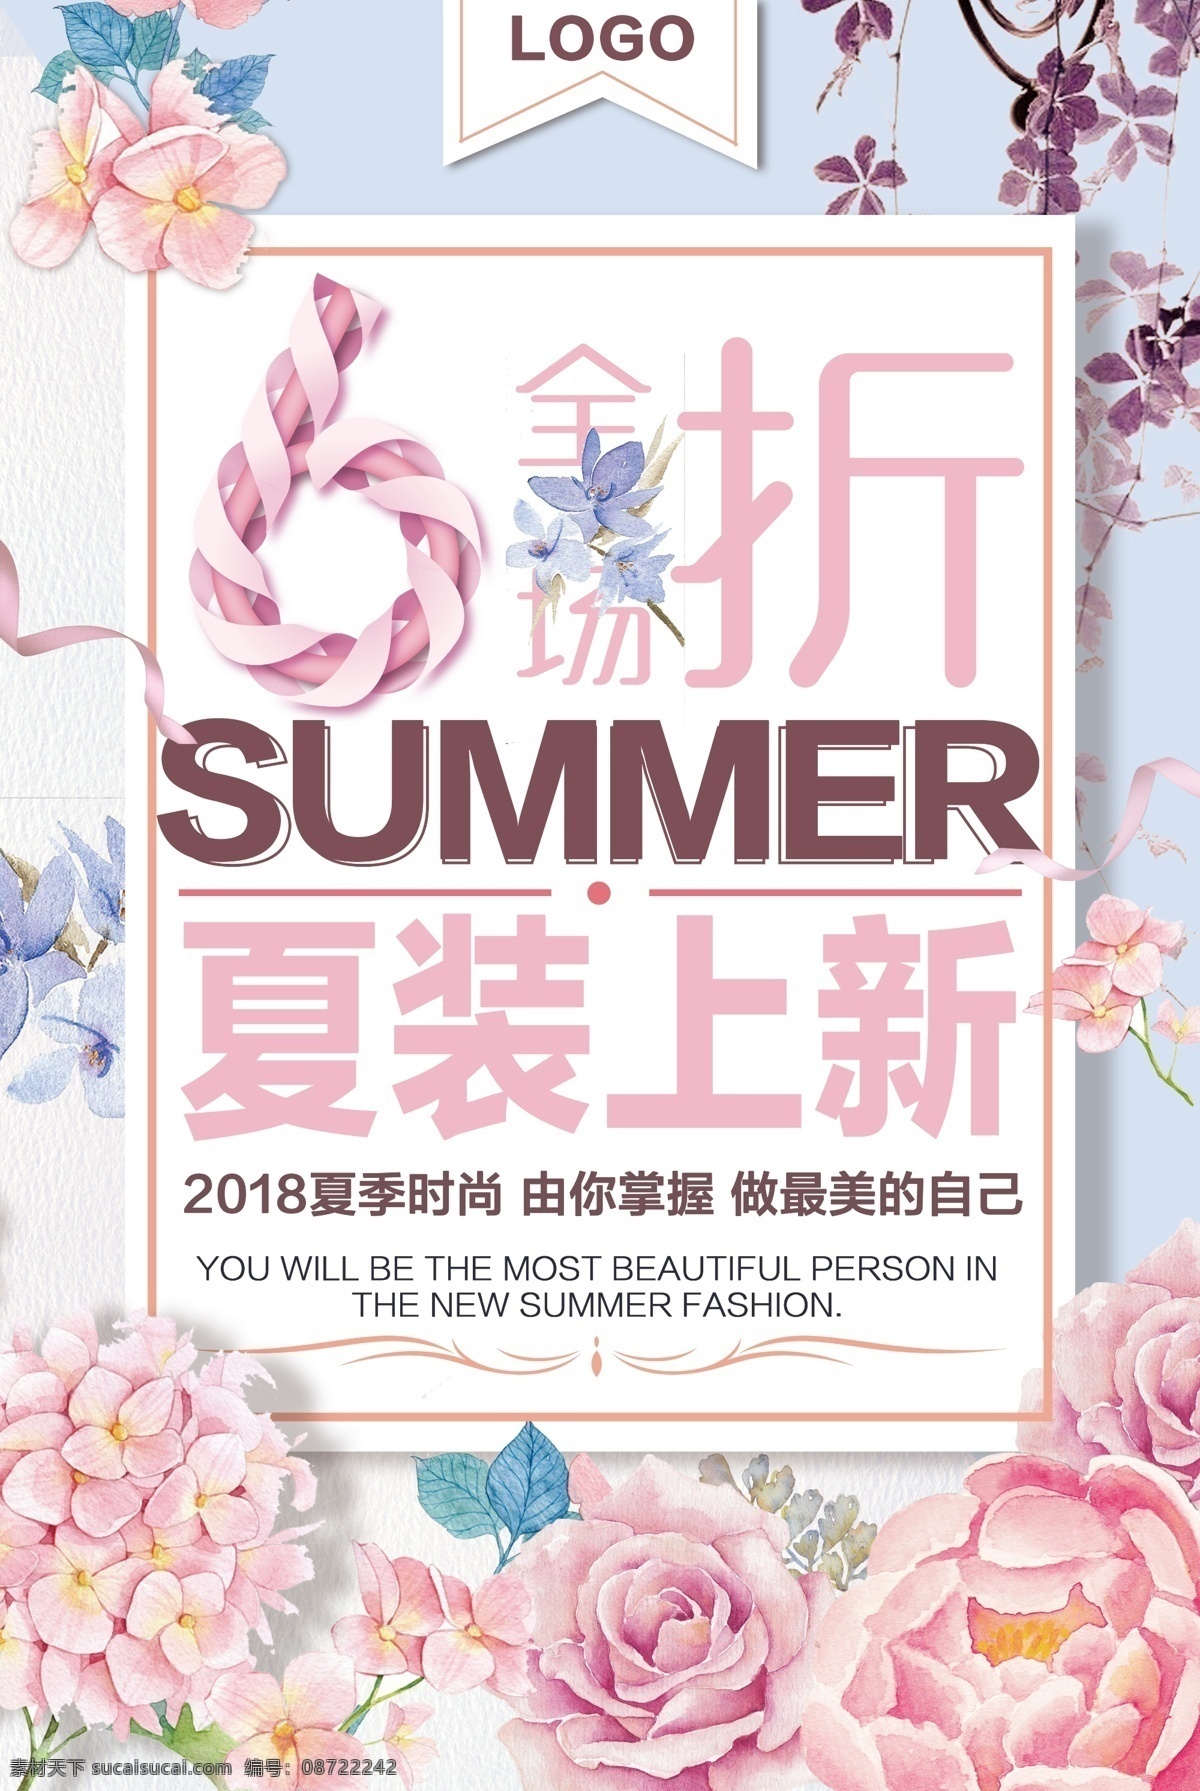 简约 时尚 唯美 夏季 促销 女装 商店 海报